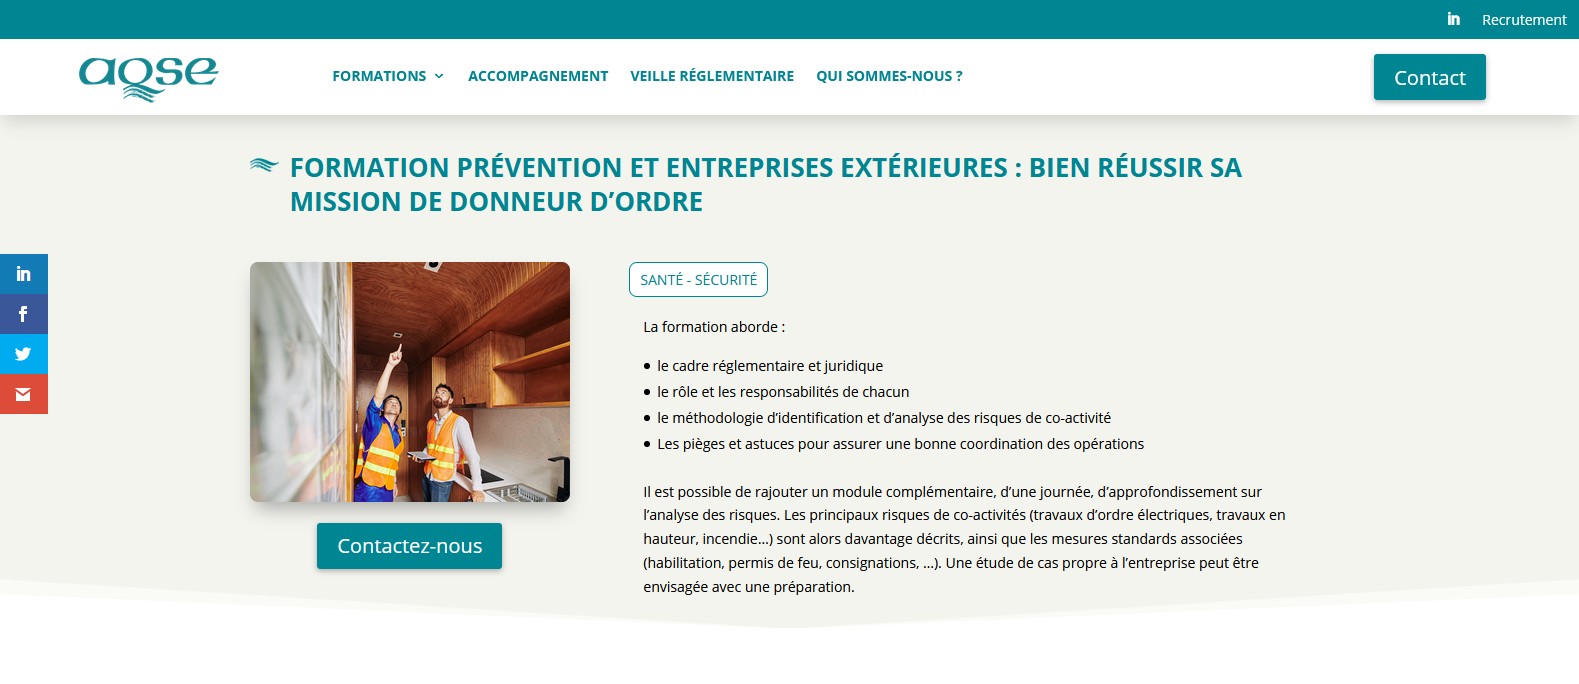 AQSE-france.fr Formation entreprises extrieures et scurit